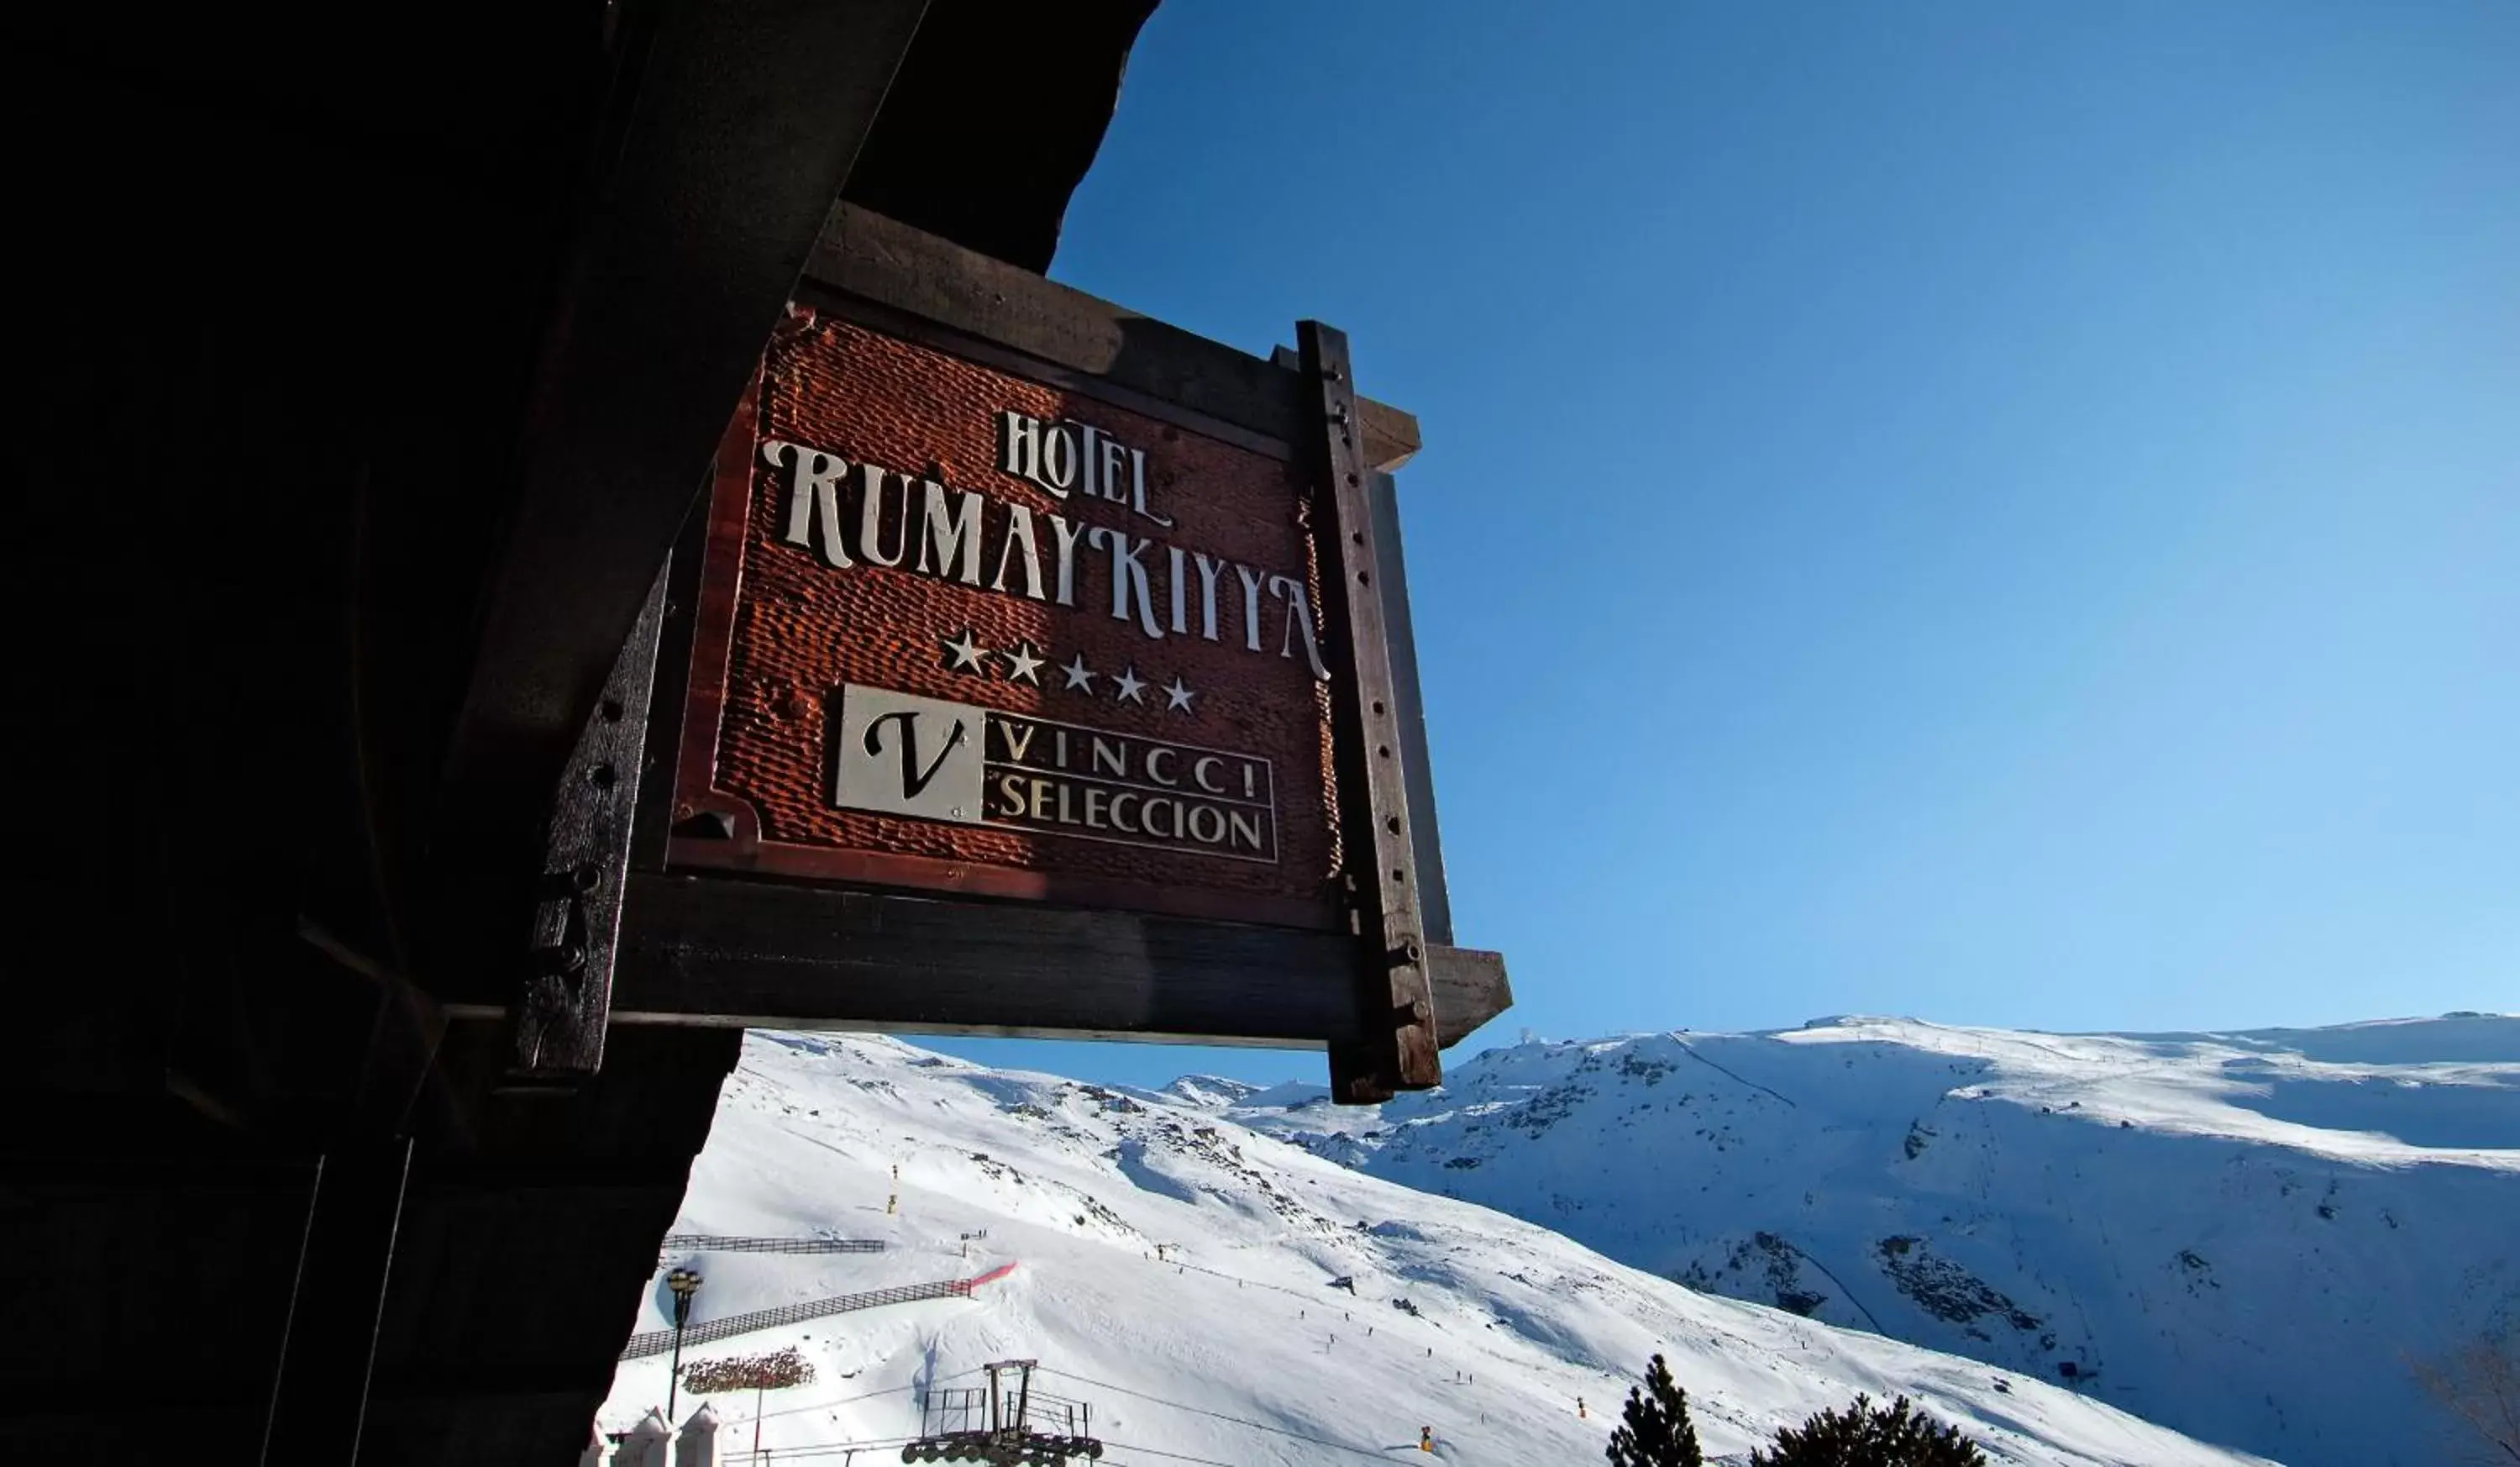 Facade/entrance, Winter in Vincci Selección Rumaykiyya